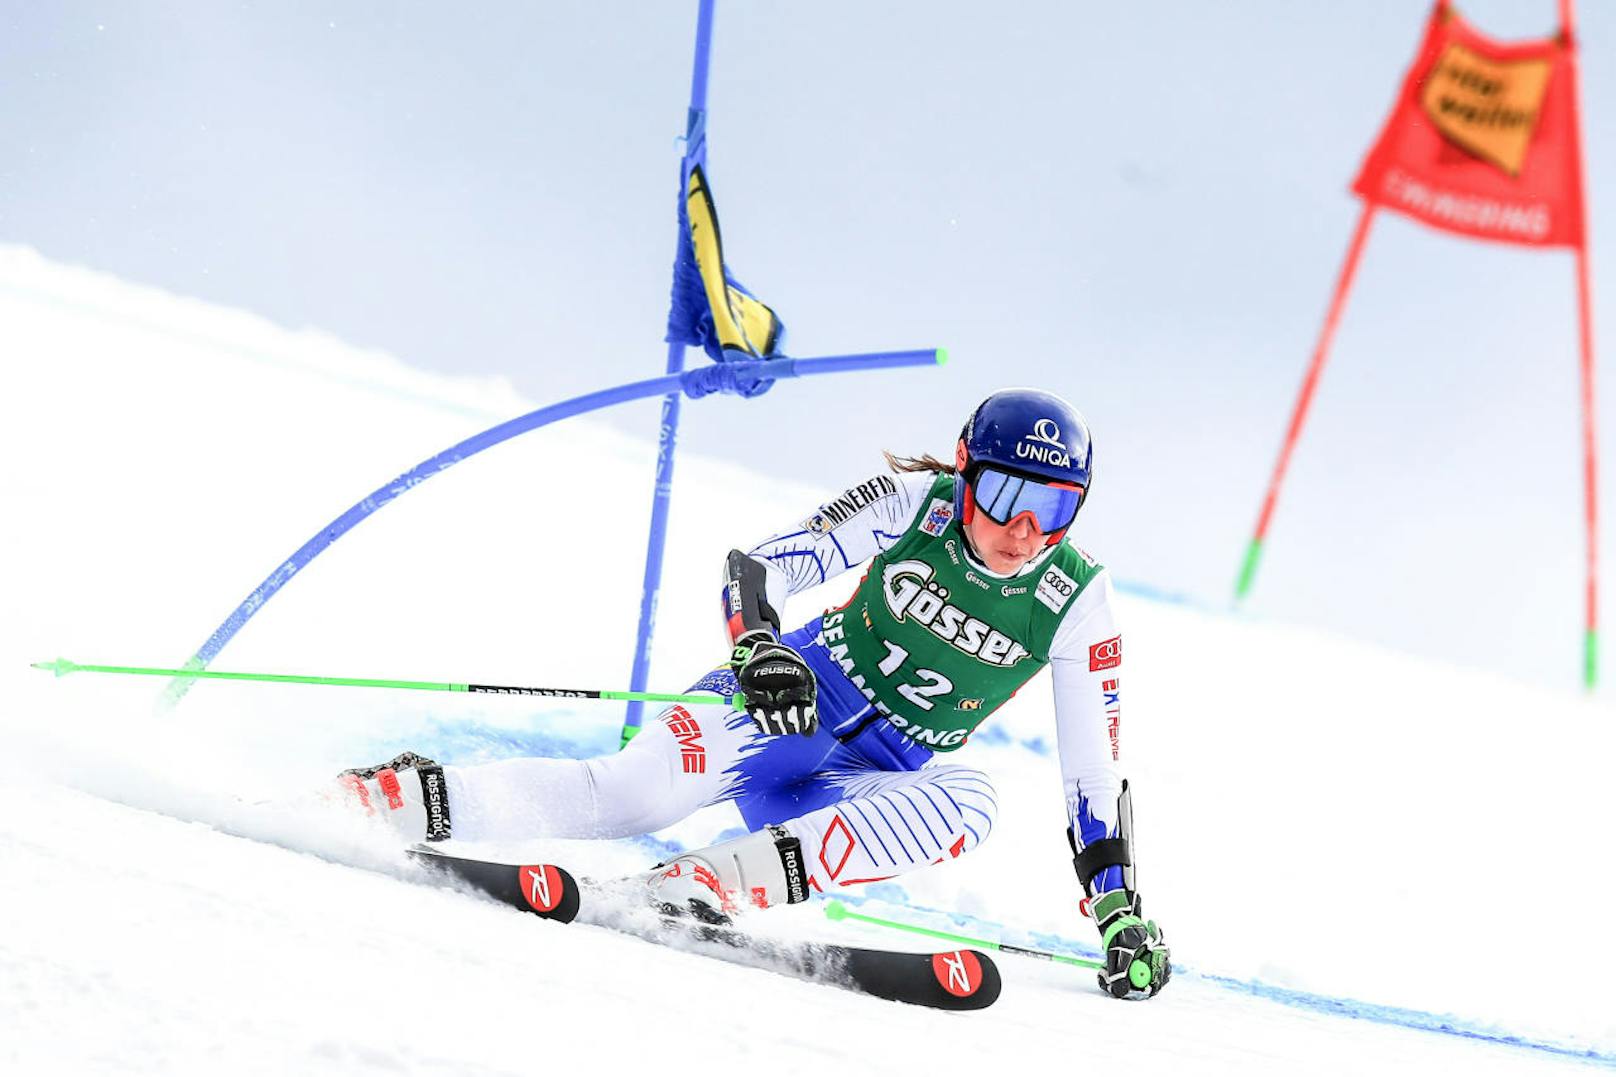 Zwischen Weihnachten und Silvester gastierte der Damen-Weltcup traditionell in Österreich. Am Semmering stieg eine Ski-Party mit 20.000 begeisterten Fans. Und die bejubelten Petra Vlhova! Denn die Slowakin gewann ihr fünftes Weltcuprennen - den ersten Riesentorlauf. 

<b><i> Riesentorlauf Semmering (28.12.2018)</i></b>
1. Petra Vlhova (Svk) 
2. Viktoria Rebensburg (D) 
3. Tessa Worley (F)
<b>4. Stephanie Brunner </b>